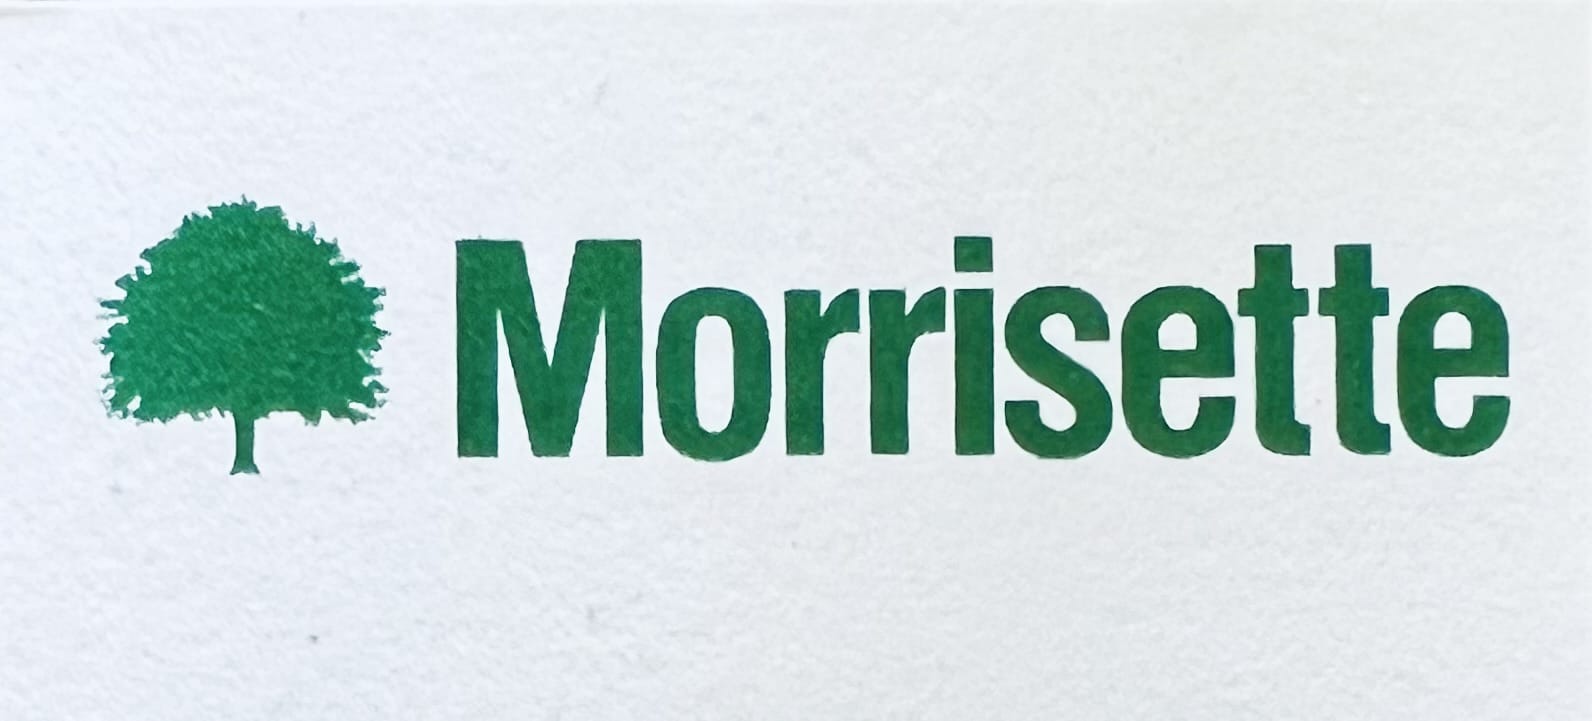 Morrisette Packaging